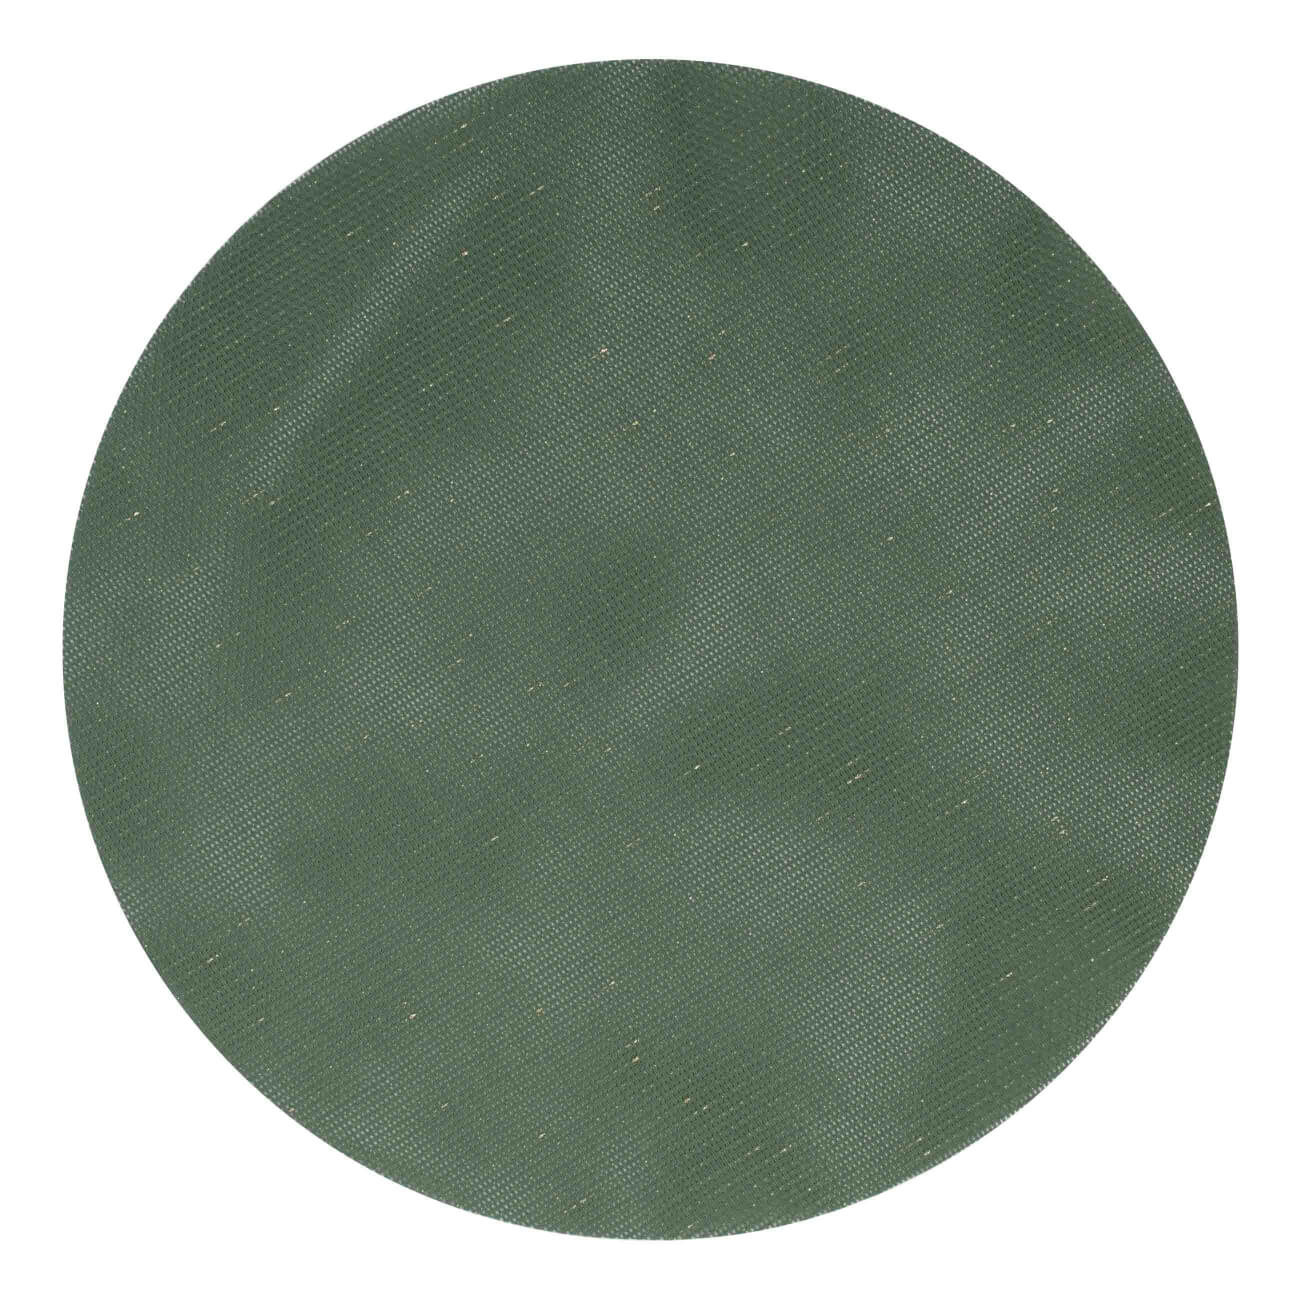 Салфетка под приборы, 38 см, ПВХ/полиэстер, круглая, зеленая, Solid